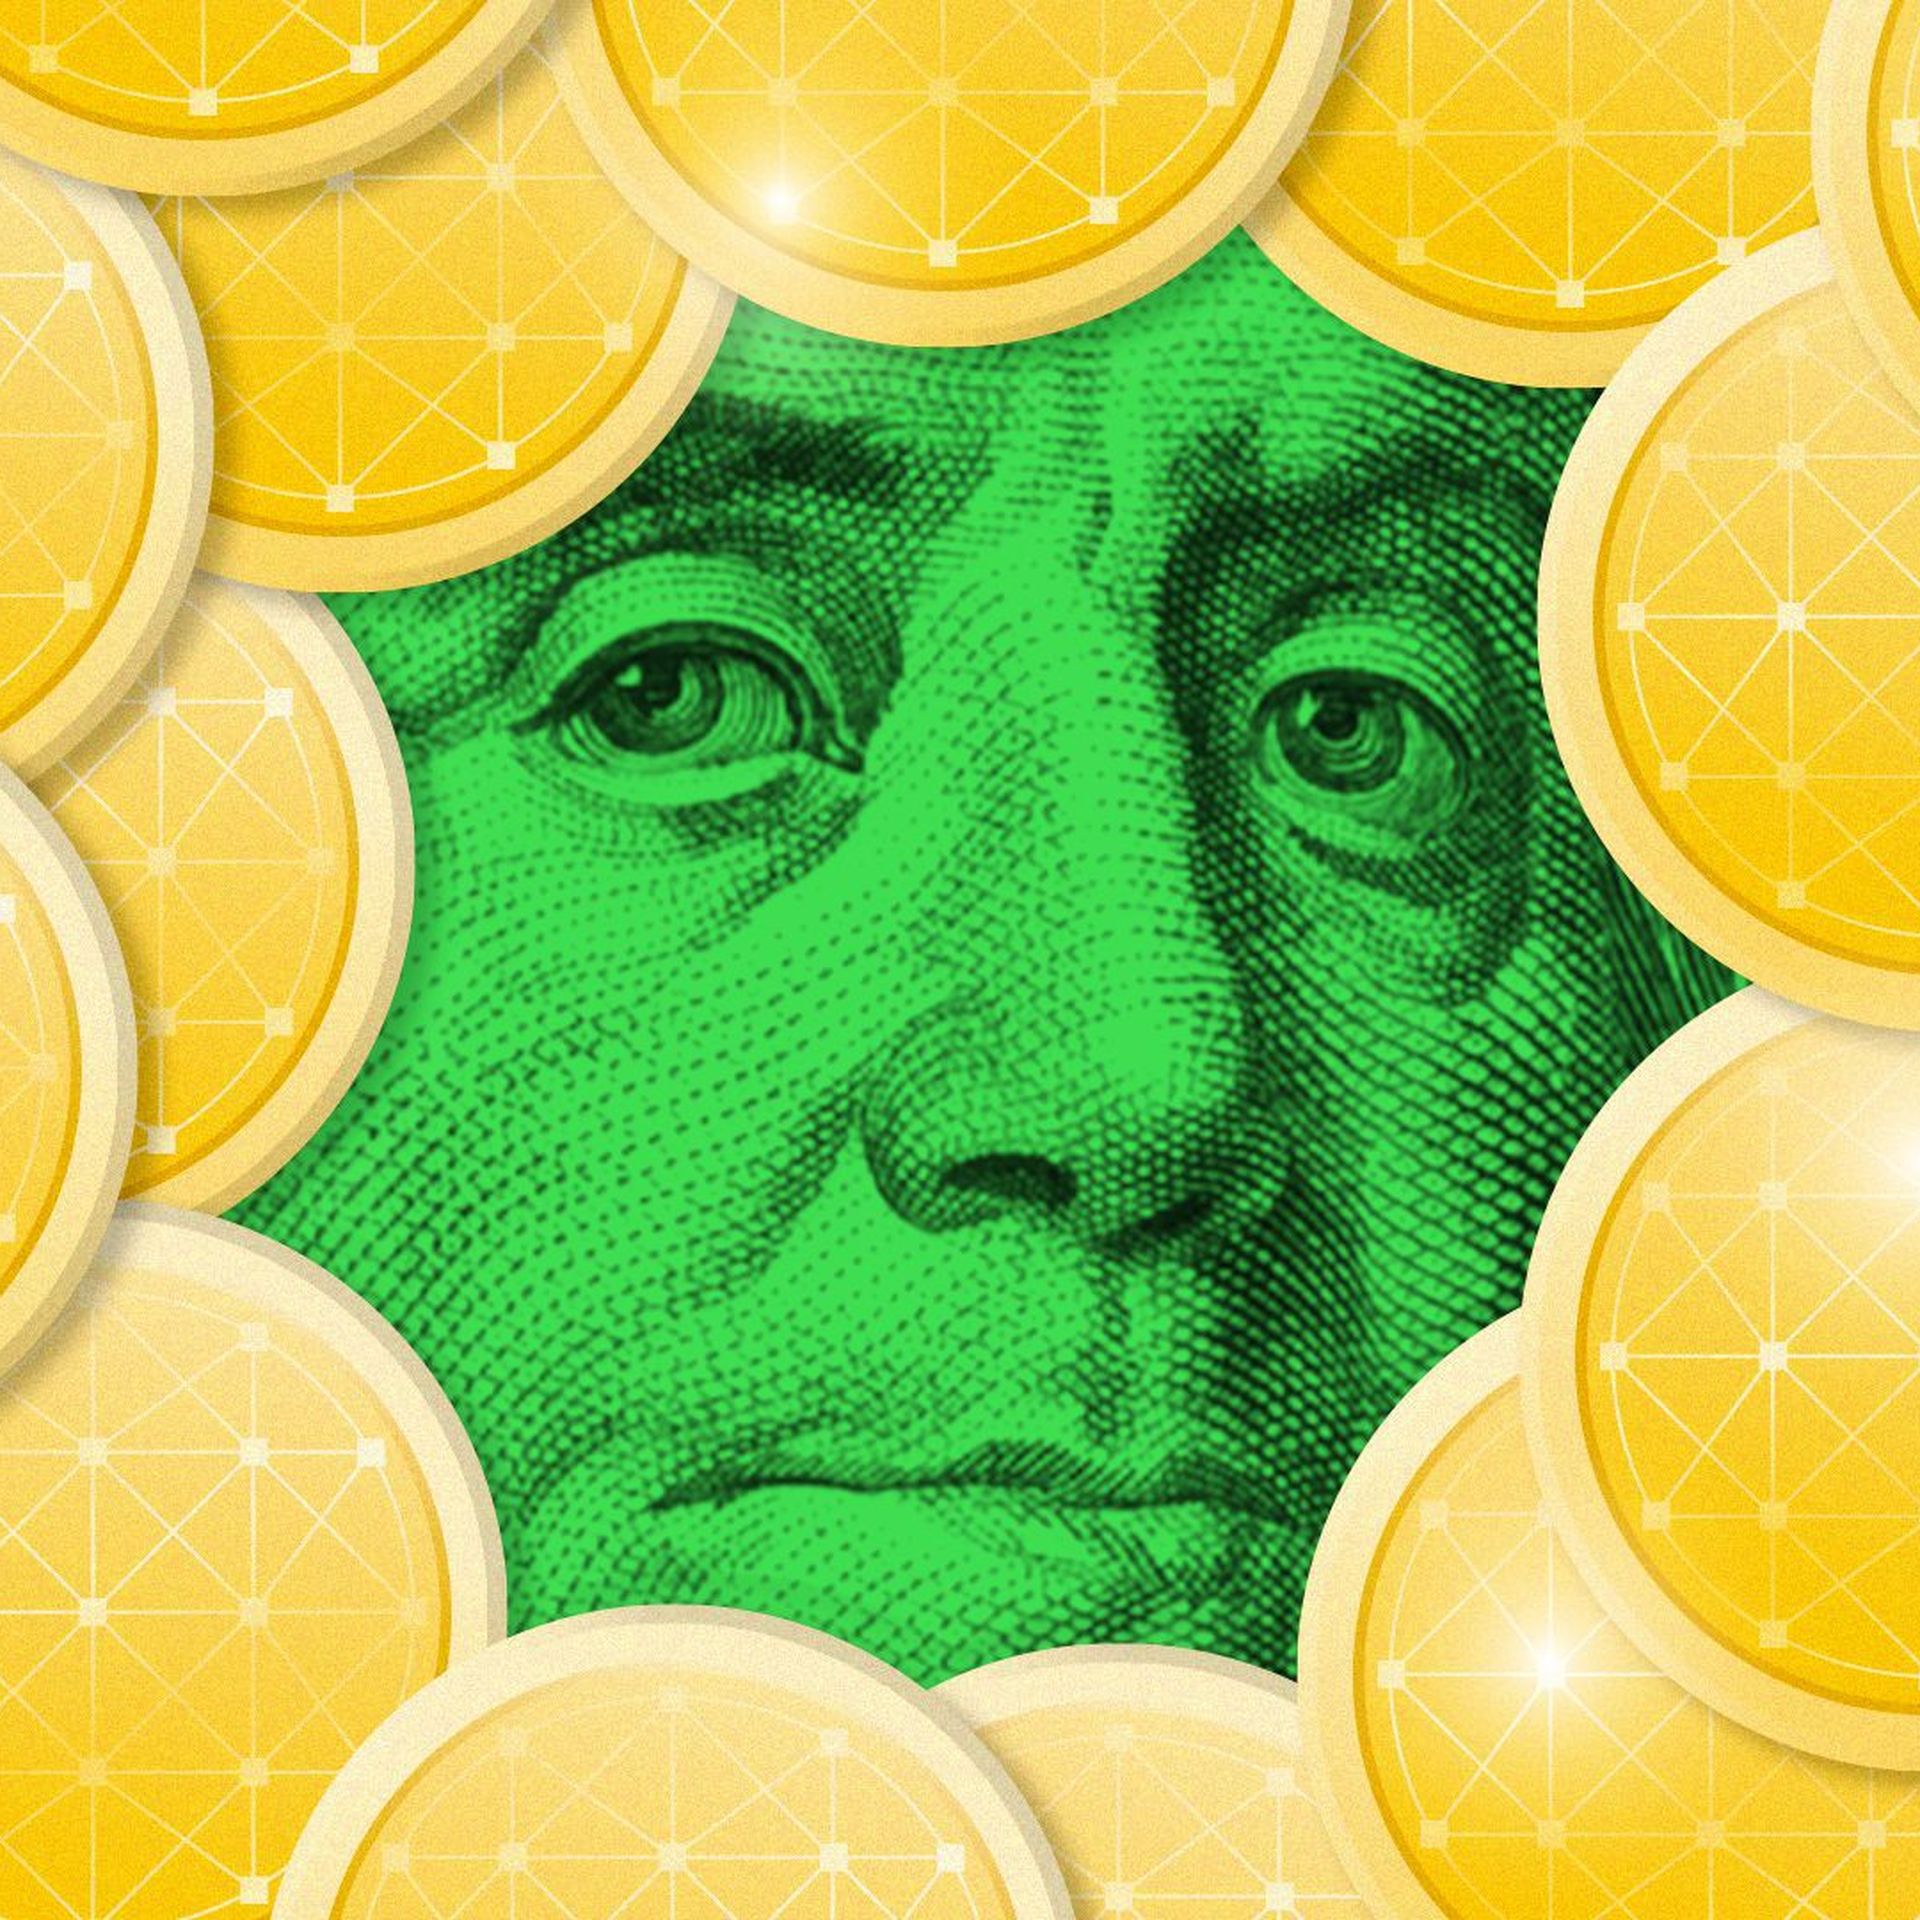 illustration of gold digital coins around Ben Franklin face